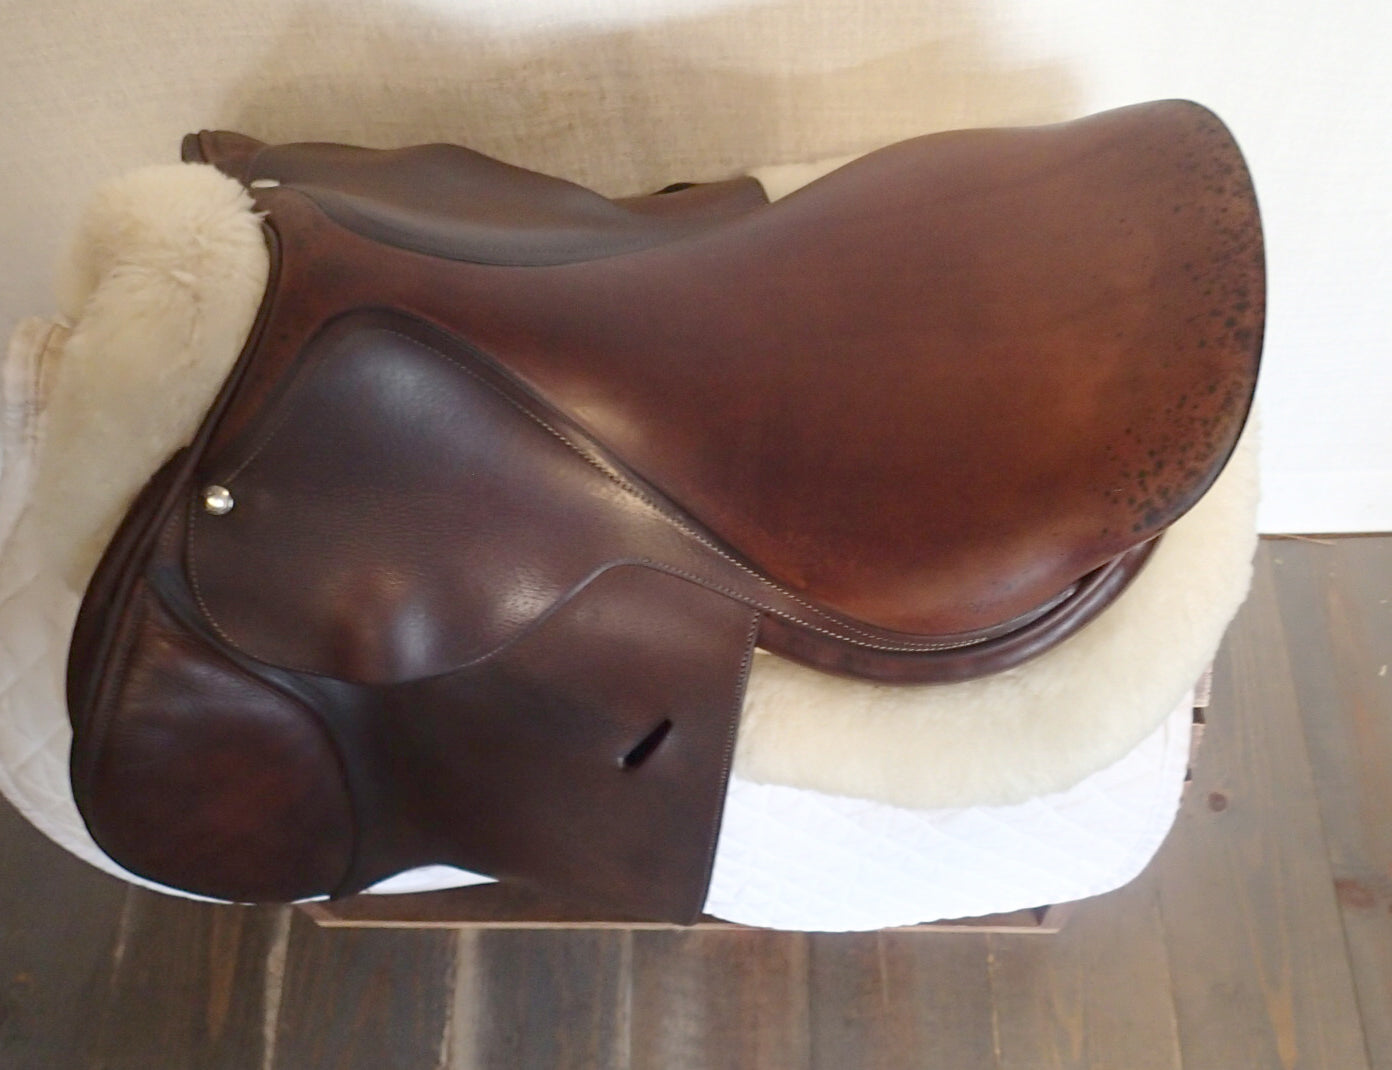 17" Butet Saddle - 2007 - C Seat - 1.5 Flaps - 4.5" dot to dot